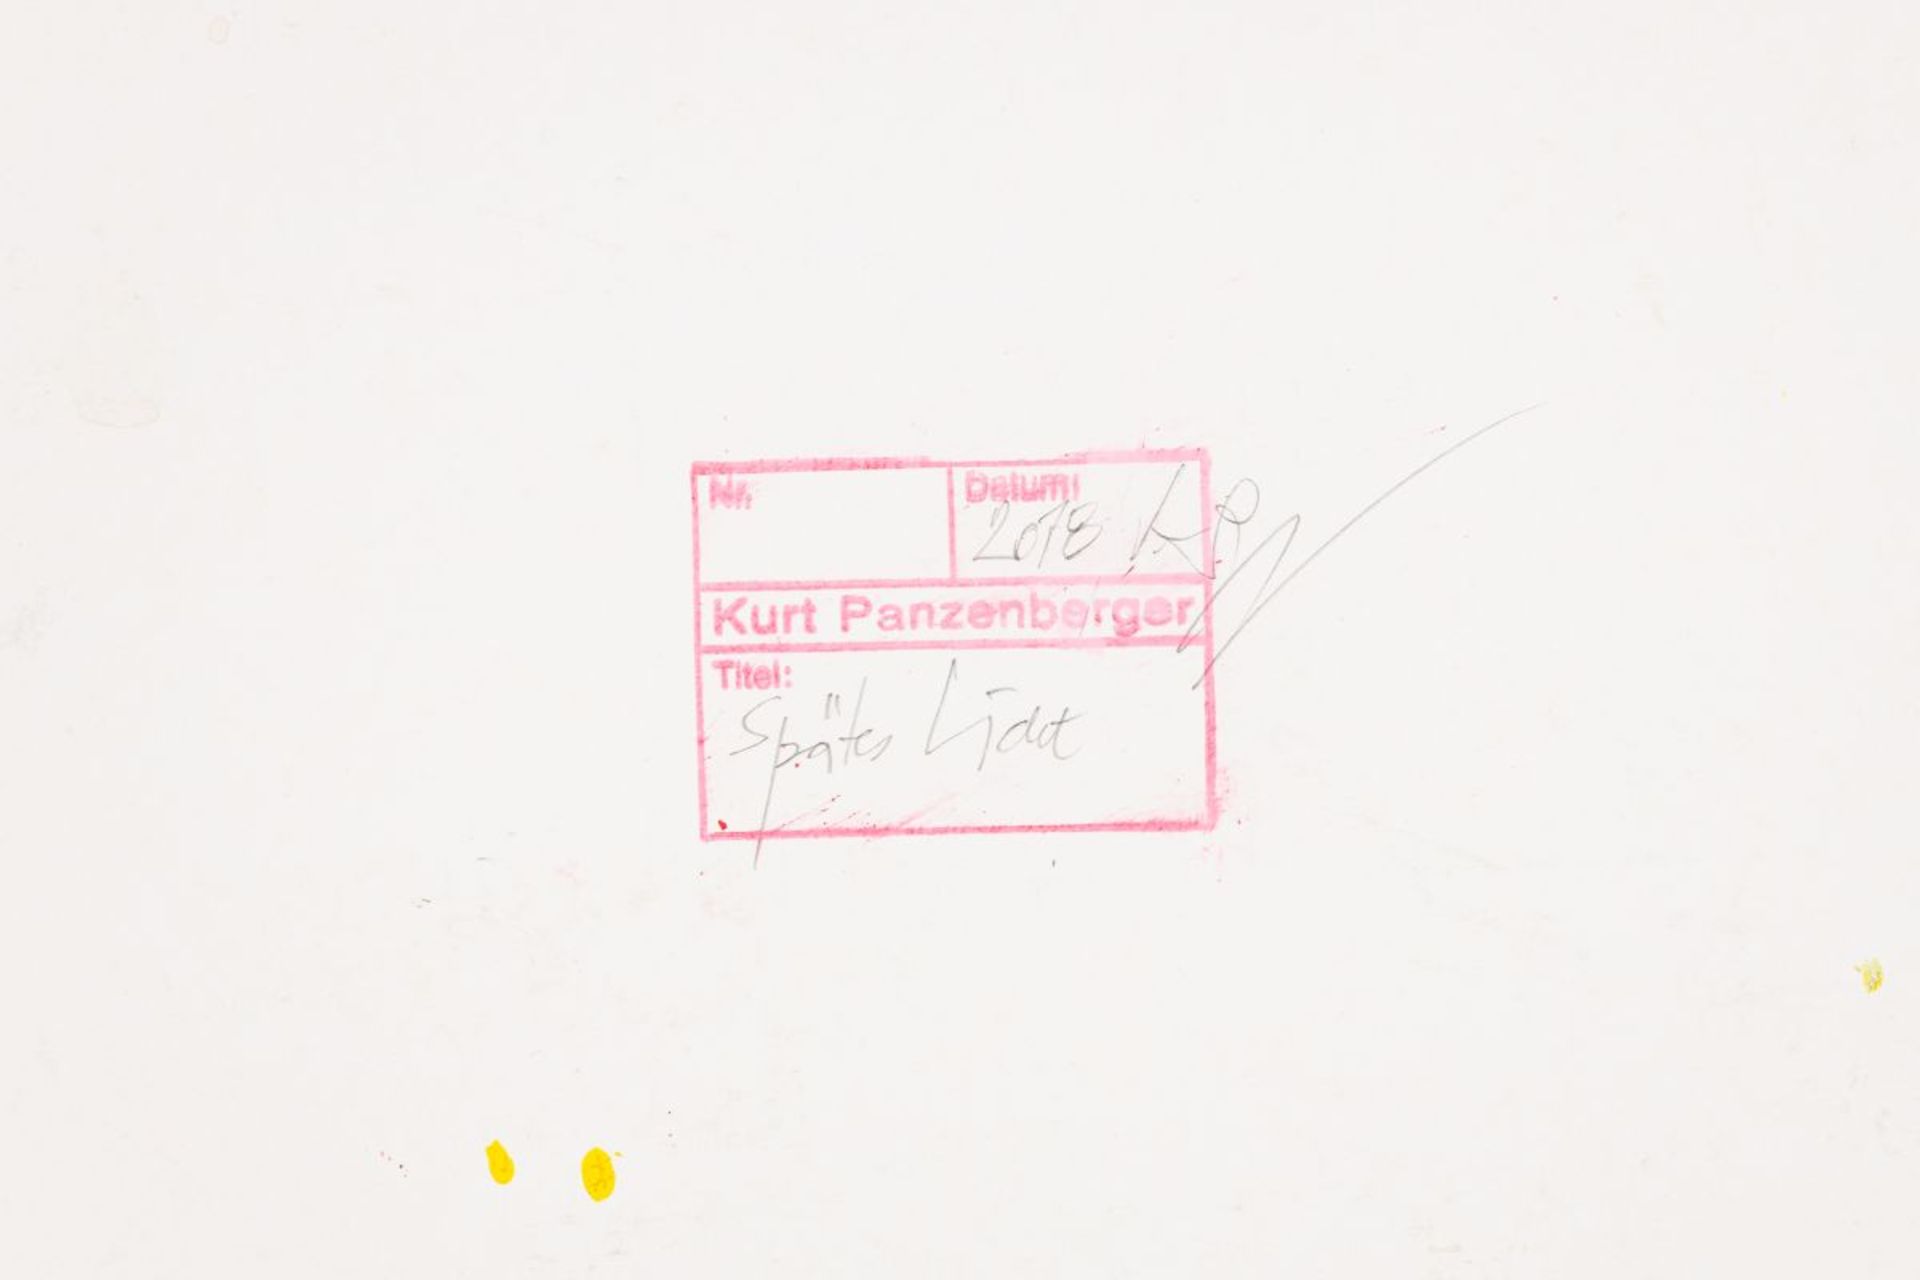 Panzenberger Kurt - Bild 3 aus 3